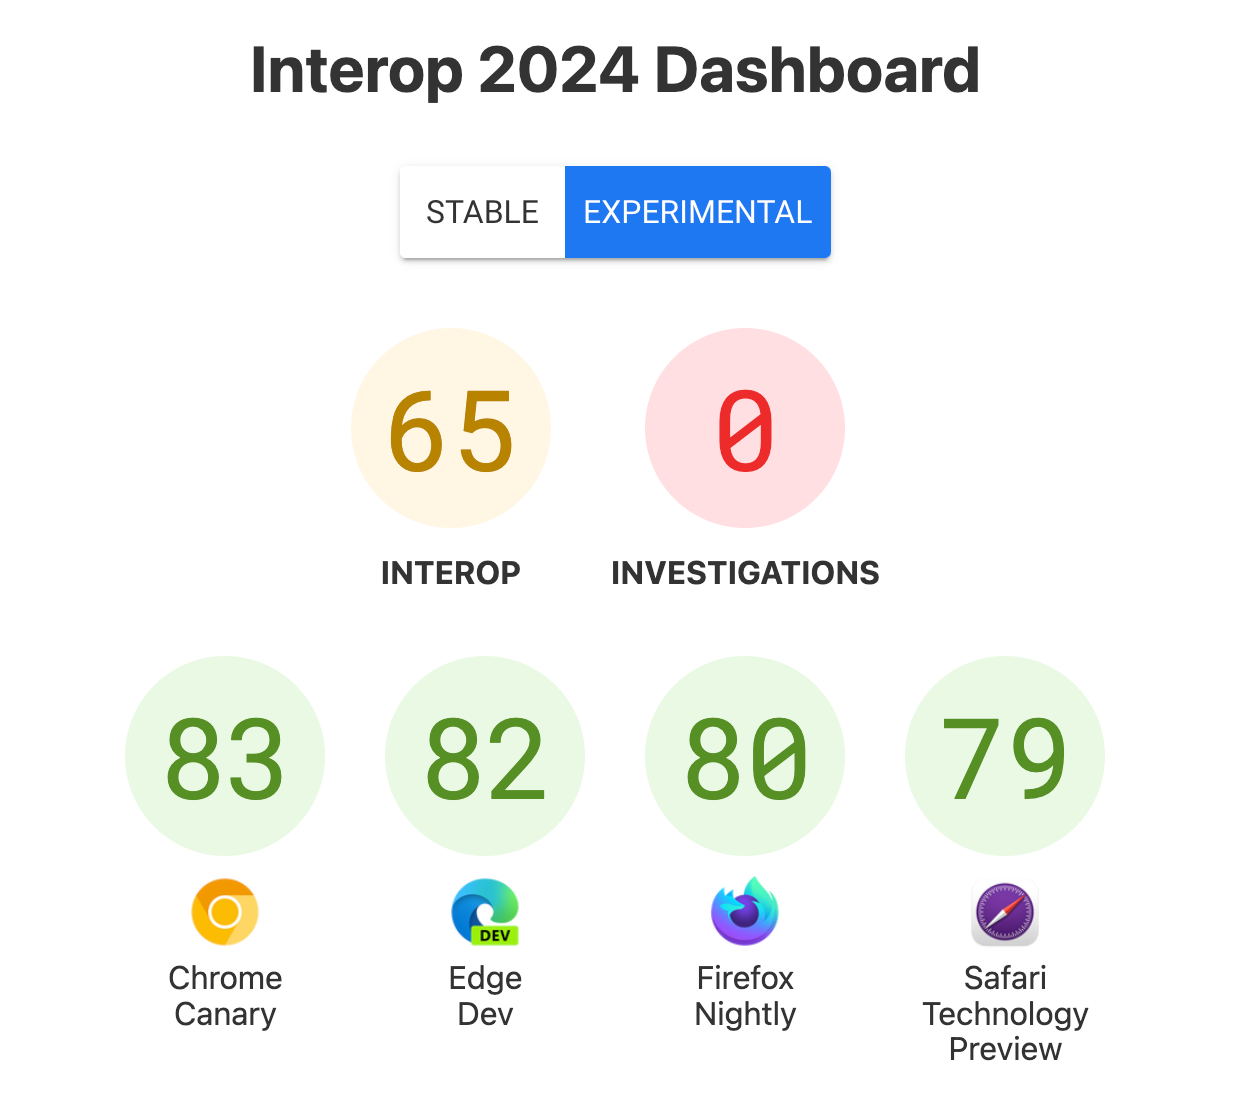 점수 - Interop: 65, 조사: 0, Chrome Canary: 83, Edge Dev: 82, Firefox Nightly: 80, Safari Technology Preview: 79 점수가 있는 대시보드의 스크린샷